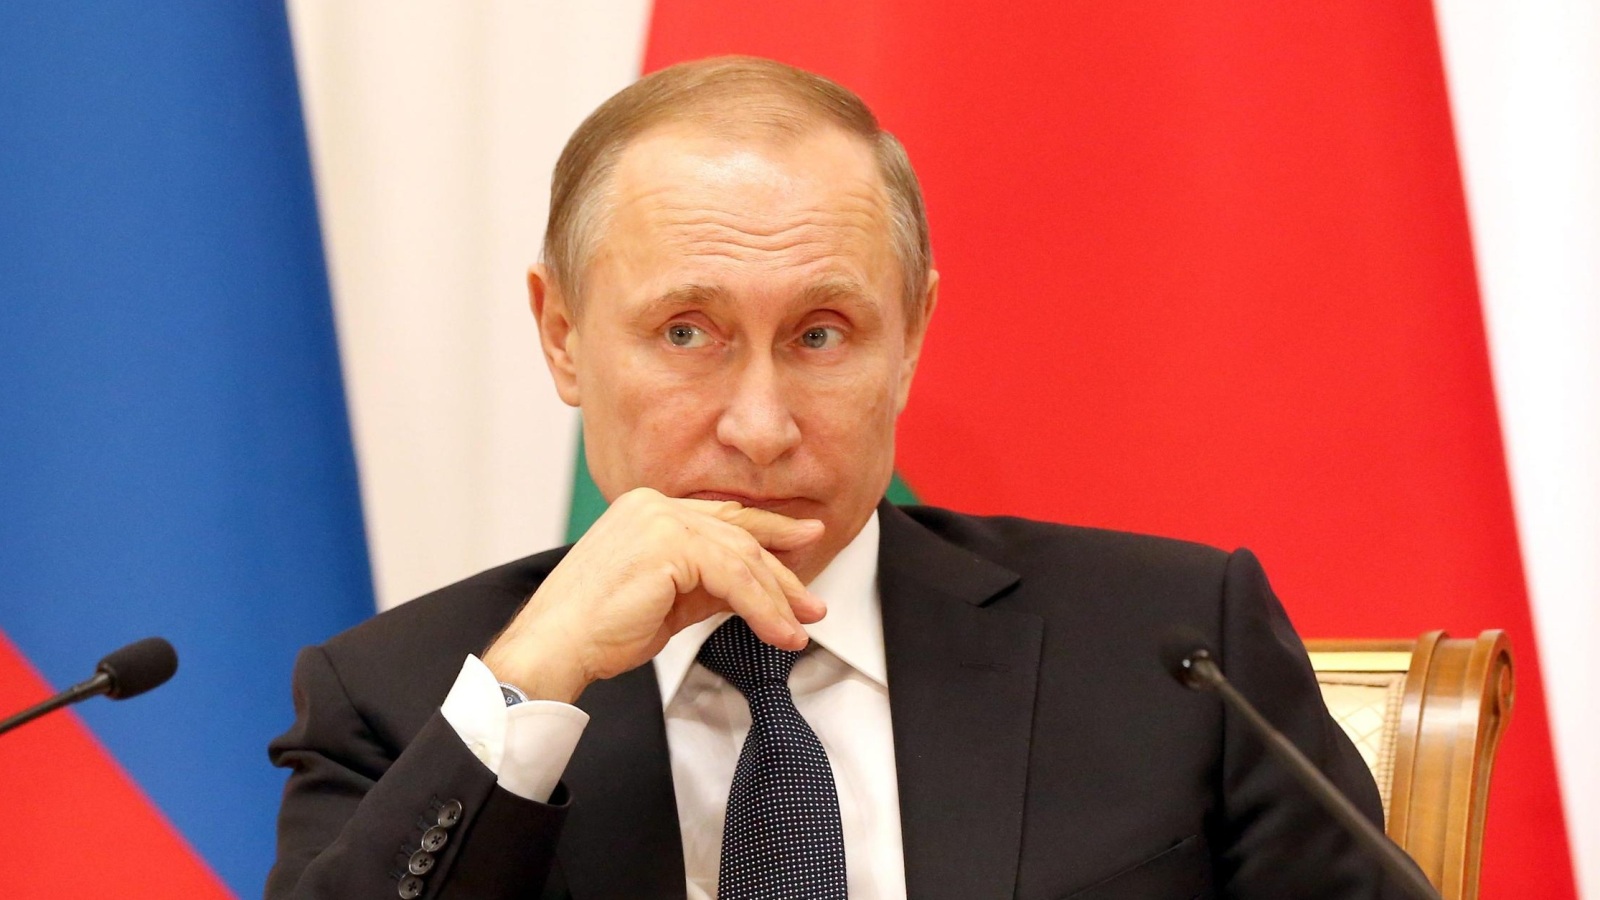 ‪الرئيس الروسي فلاديمير بوتين يأمر بانسحاب جزئي من سوريا‬ الرئيس الروسي فلاديمير بوتين يأمر بانسحاب جزئي من سوريا (الأوروبية)